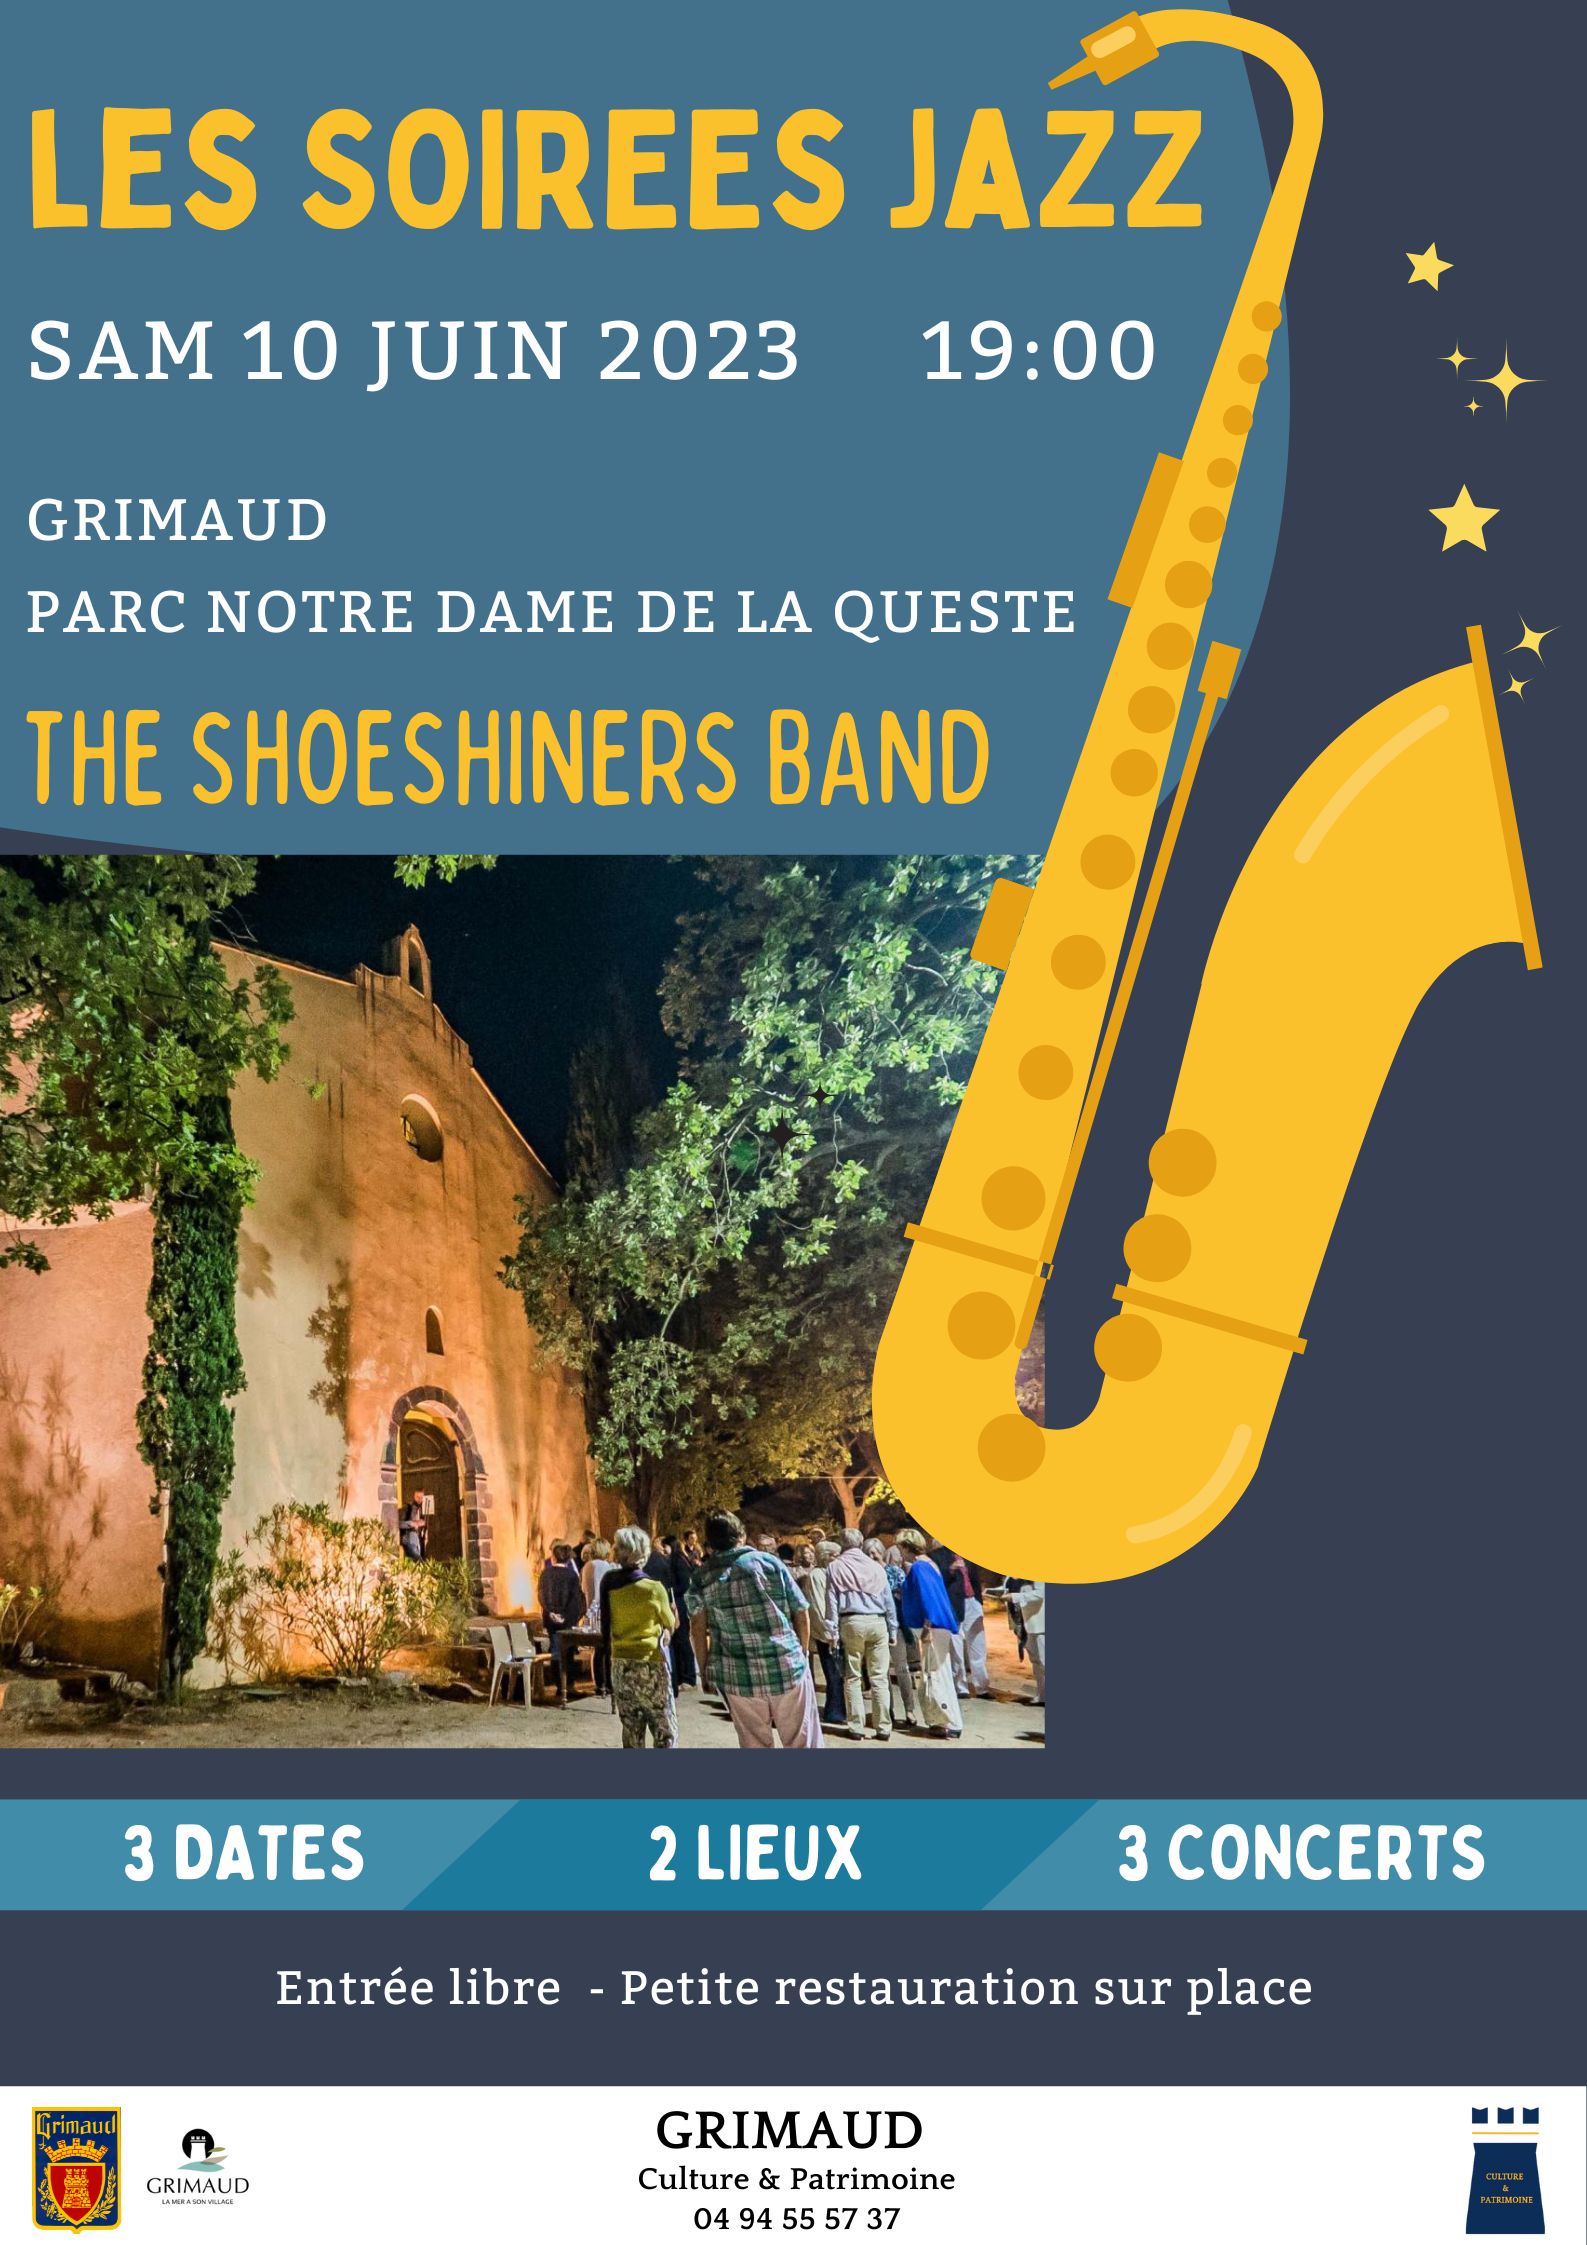 Samedi 10 juin 2023 - Soirée jazz à Notre Dame de la Queste